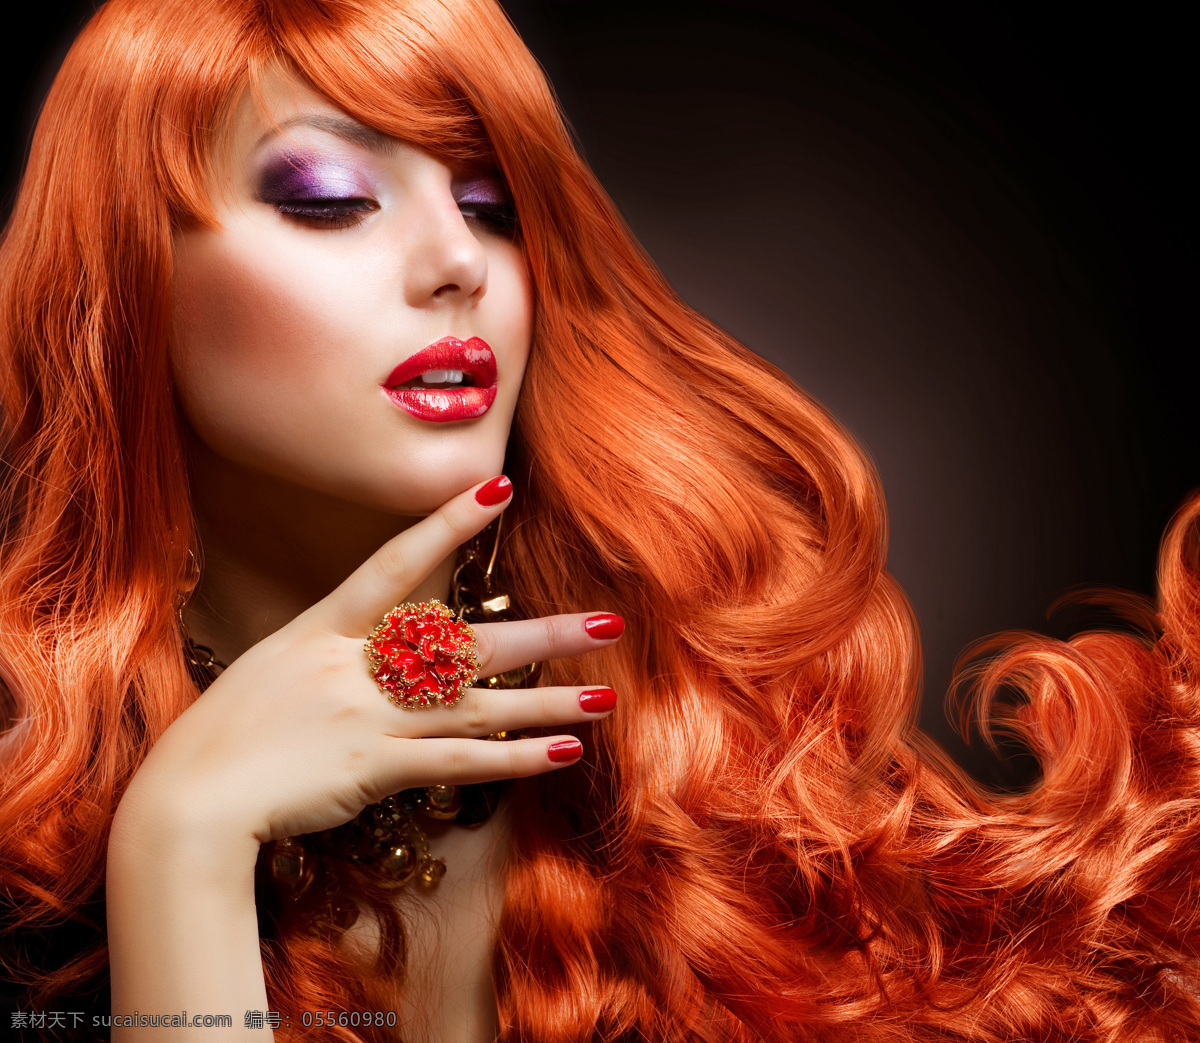 性感 时尚 美发 美女图片 红头发 外国女性 女人 性感美女 时尚美女 美女模特 美发模特 美发造型 发型 人物图片